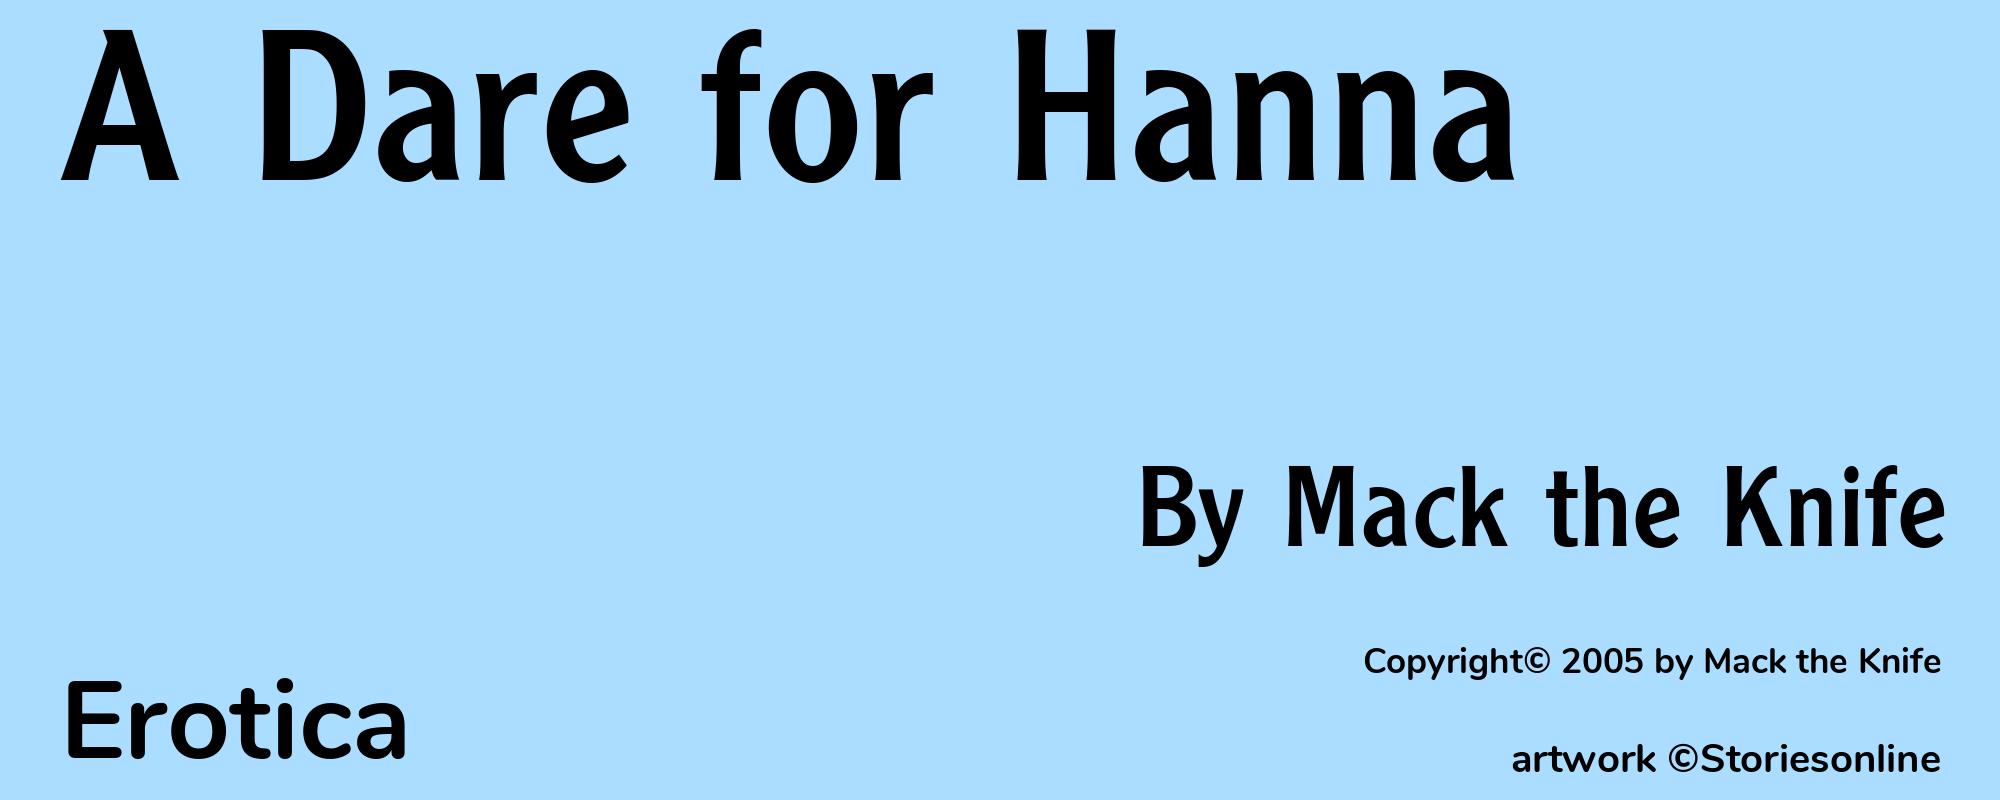 A Dare for Hanna - Cover